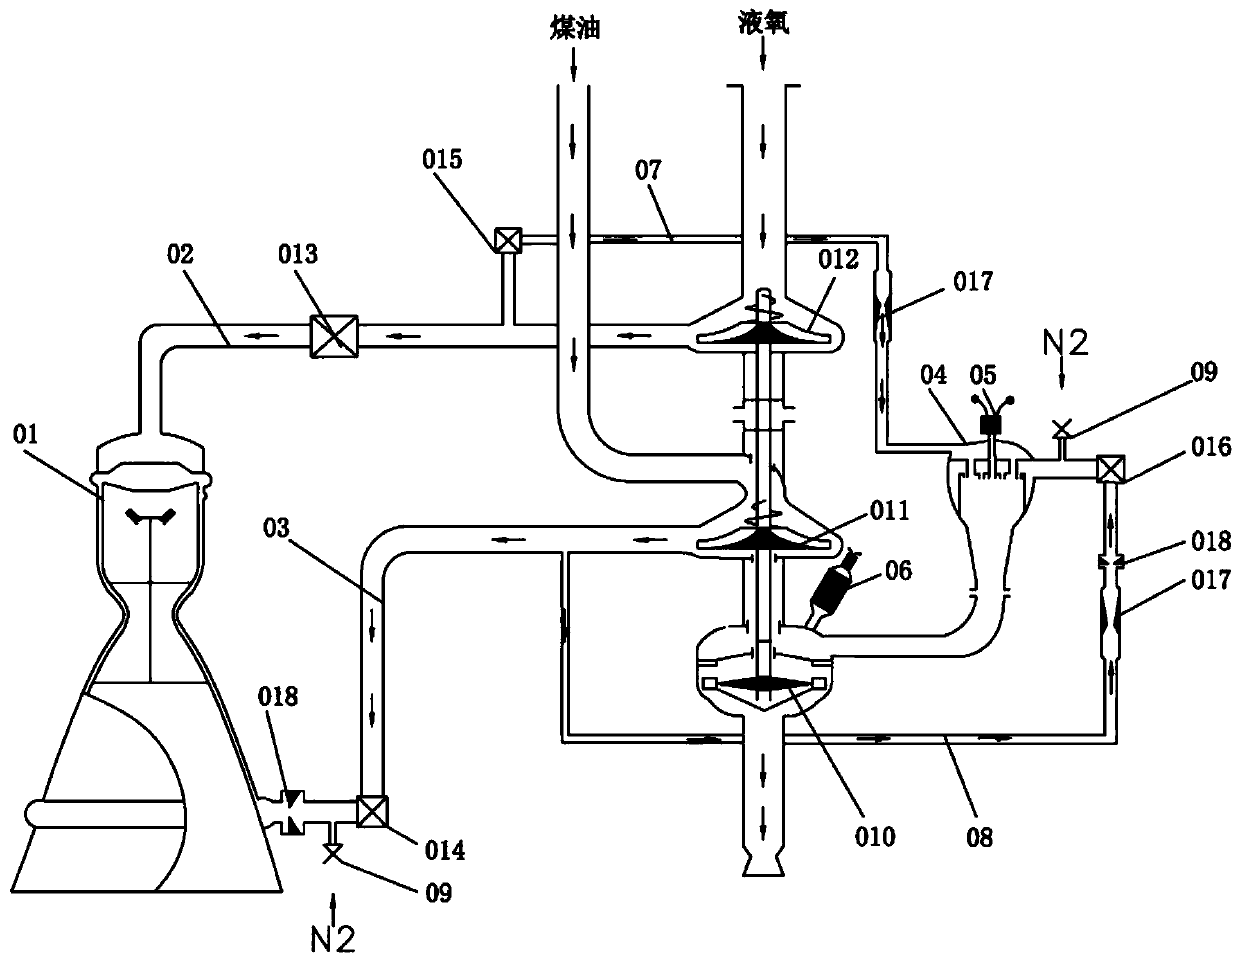 Open-cycle liquid oxygen kerosene engine system and use method